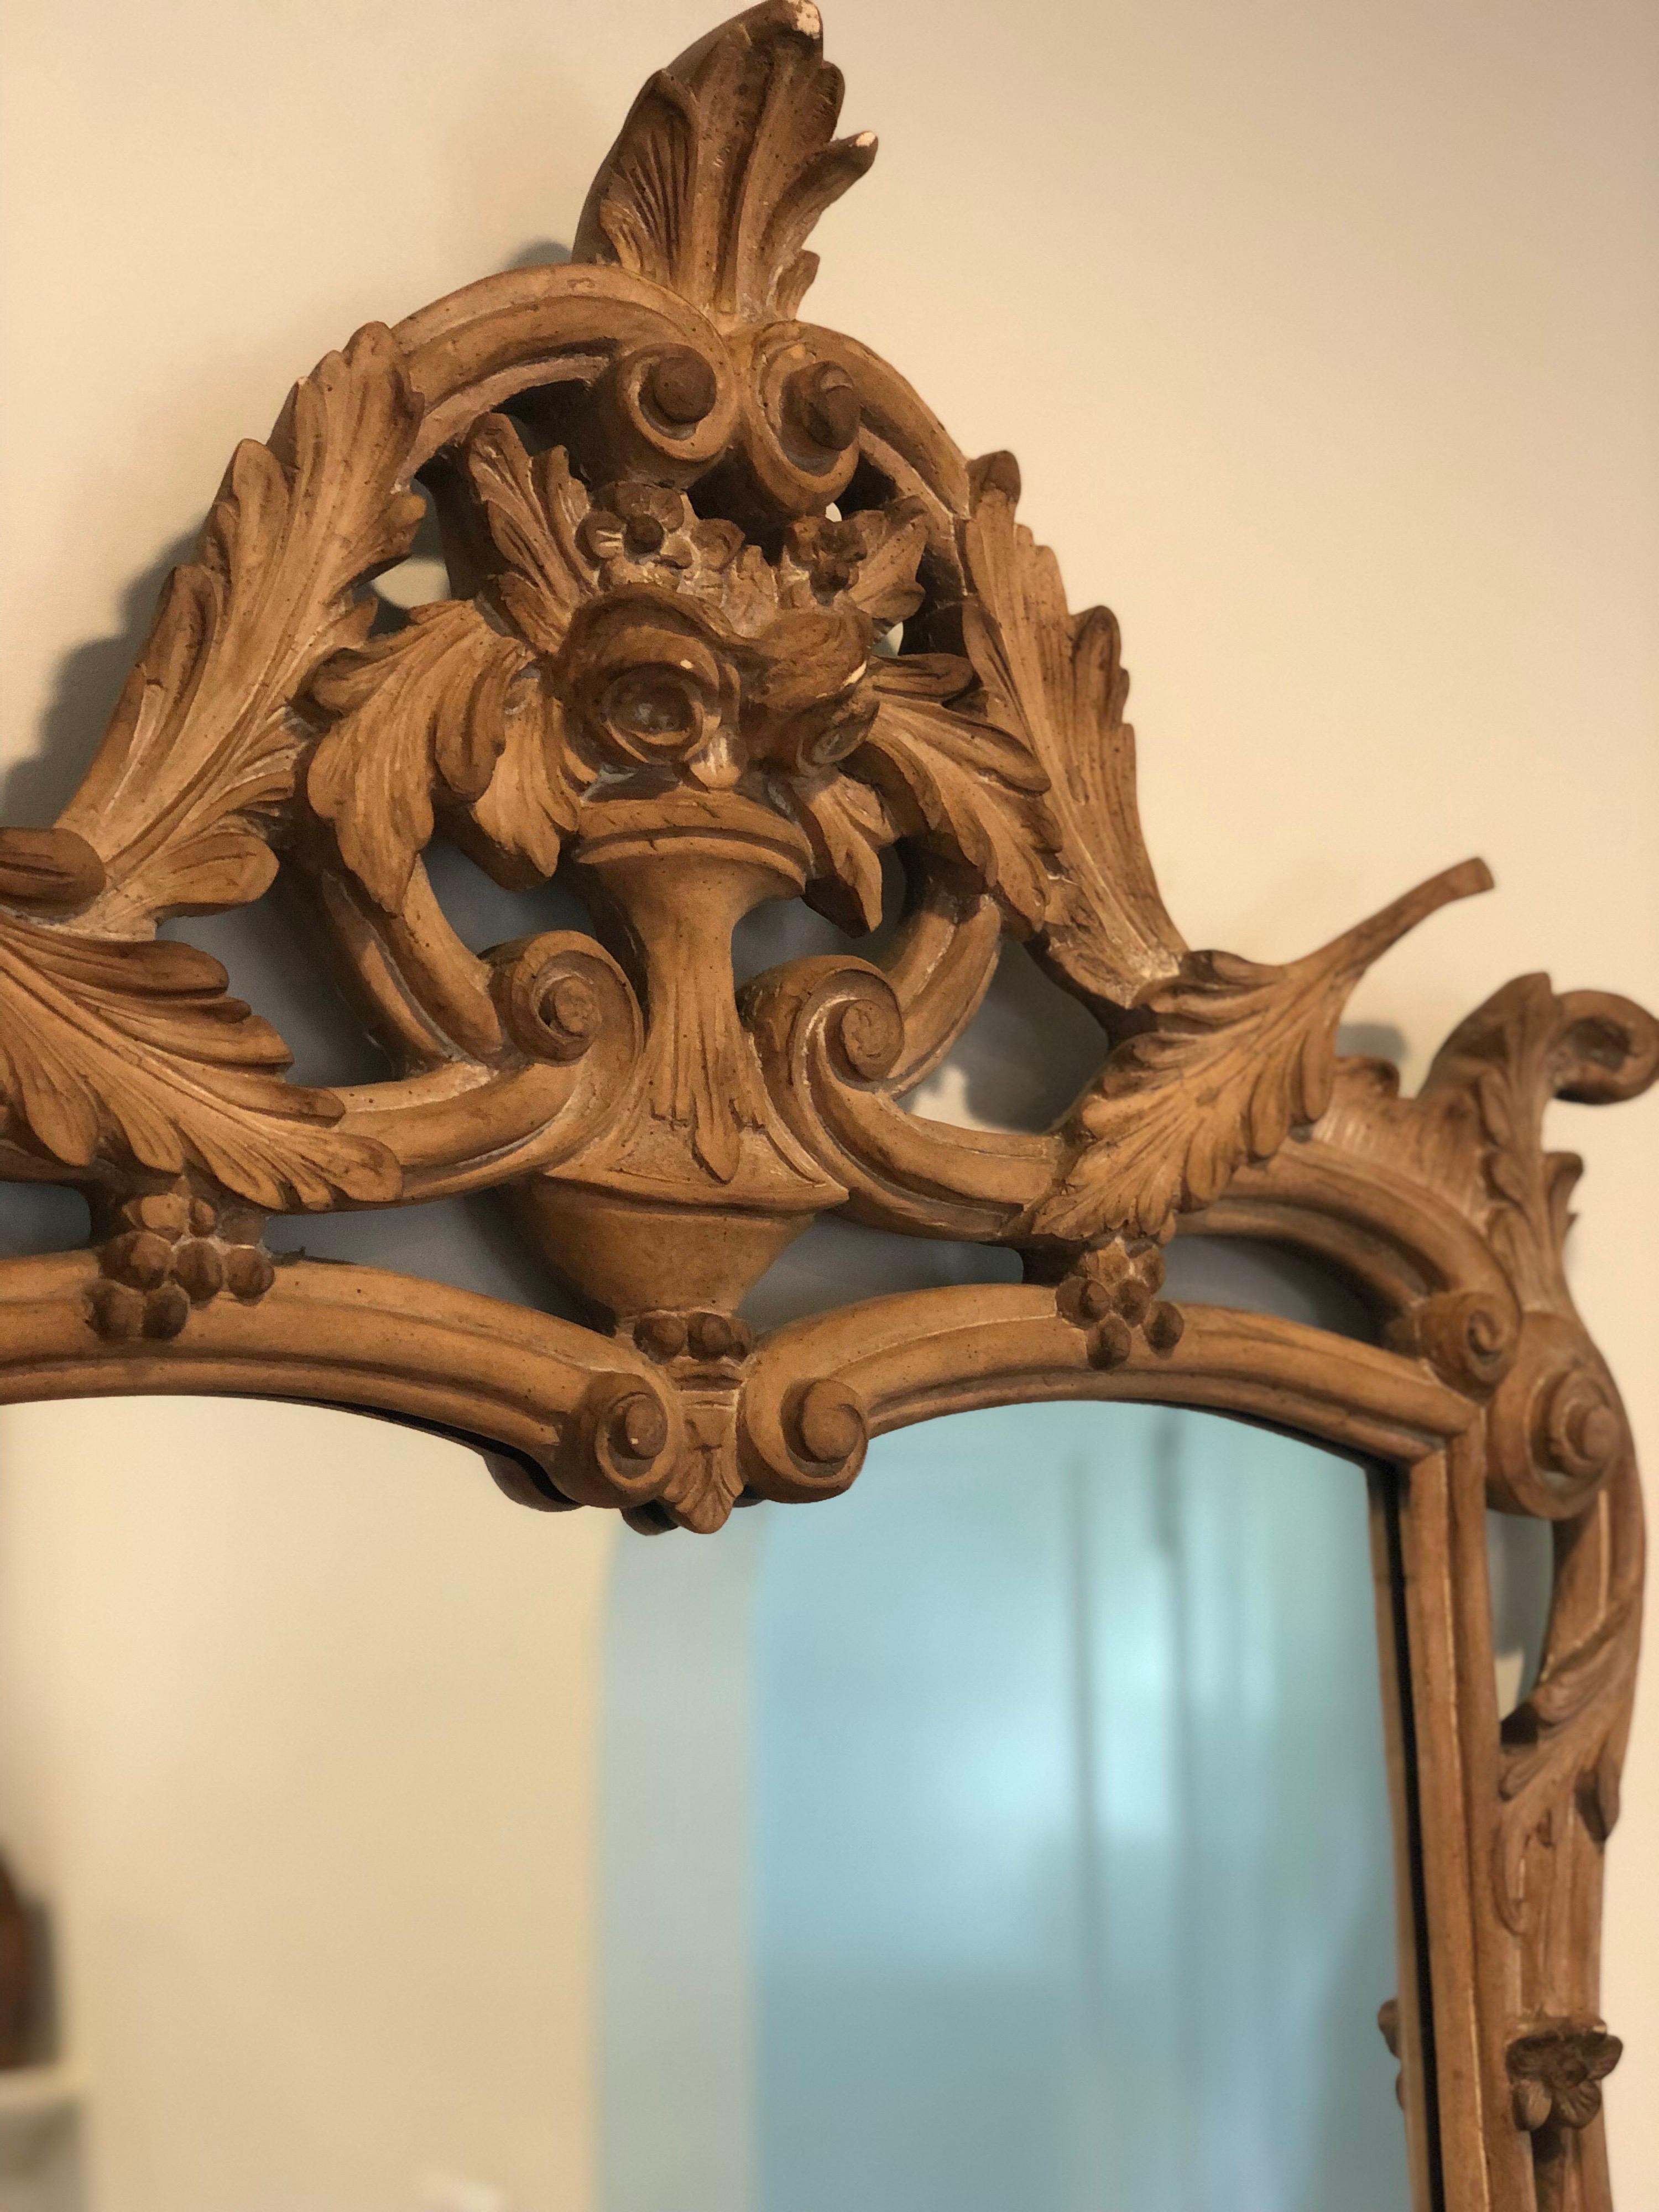 Miroir vintage de style français fabriqué par Mirror Fair. 
Sculpté à la main avec. des feuilles et des fleurs dans une urne. 

Le bois brut non fini à patine naturelle lui confère une allure contemporaine.